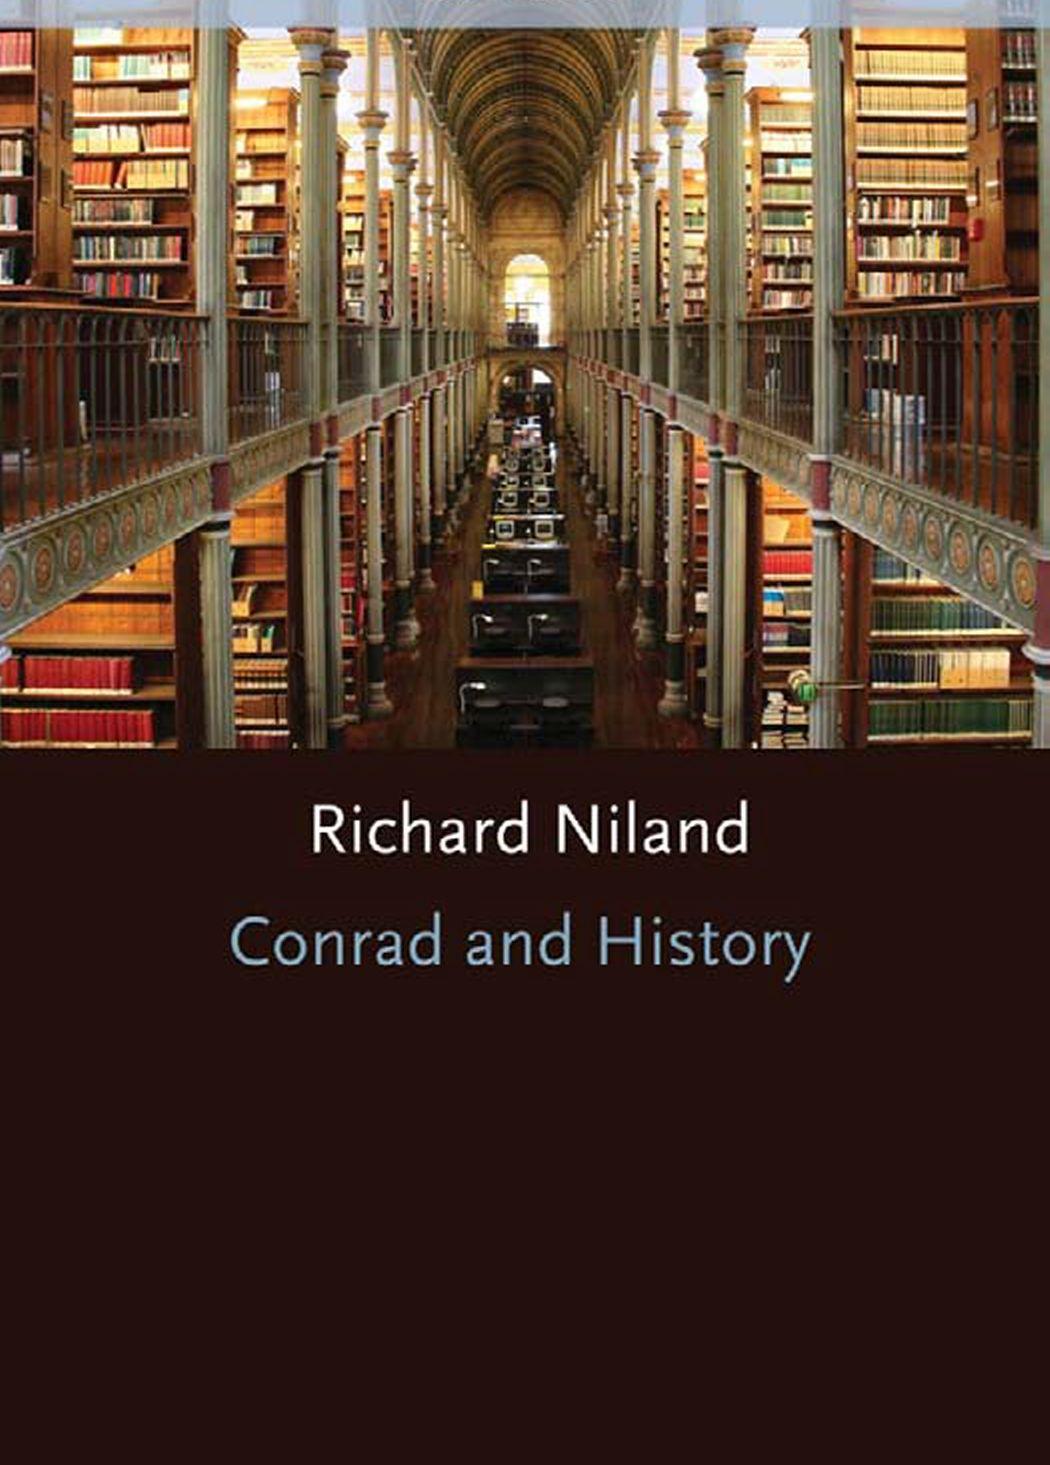 r-n-richard-niland-conrad-and-history-1.jpg